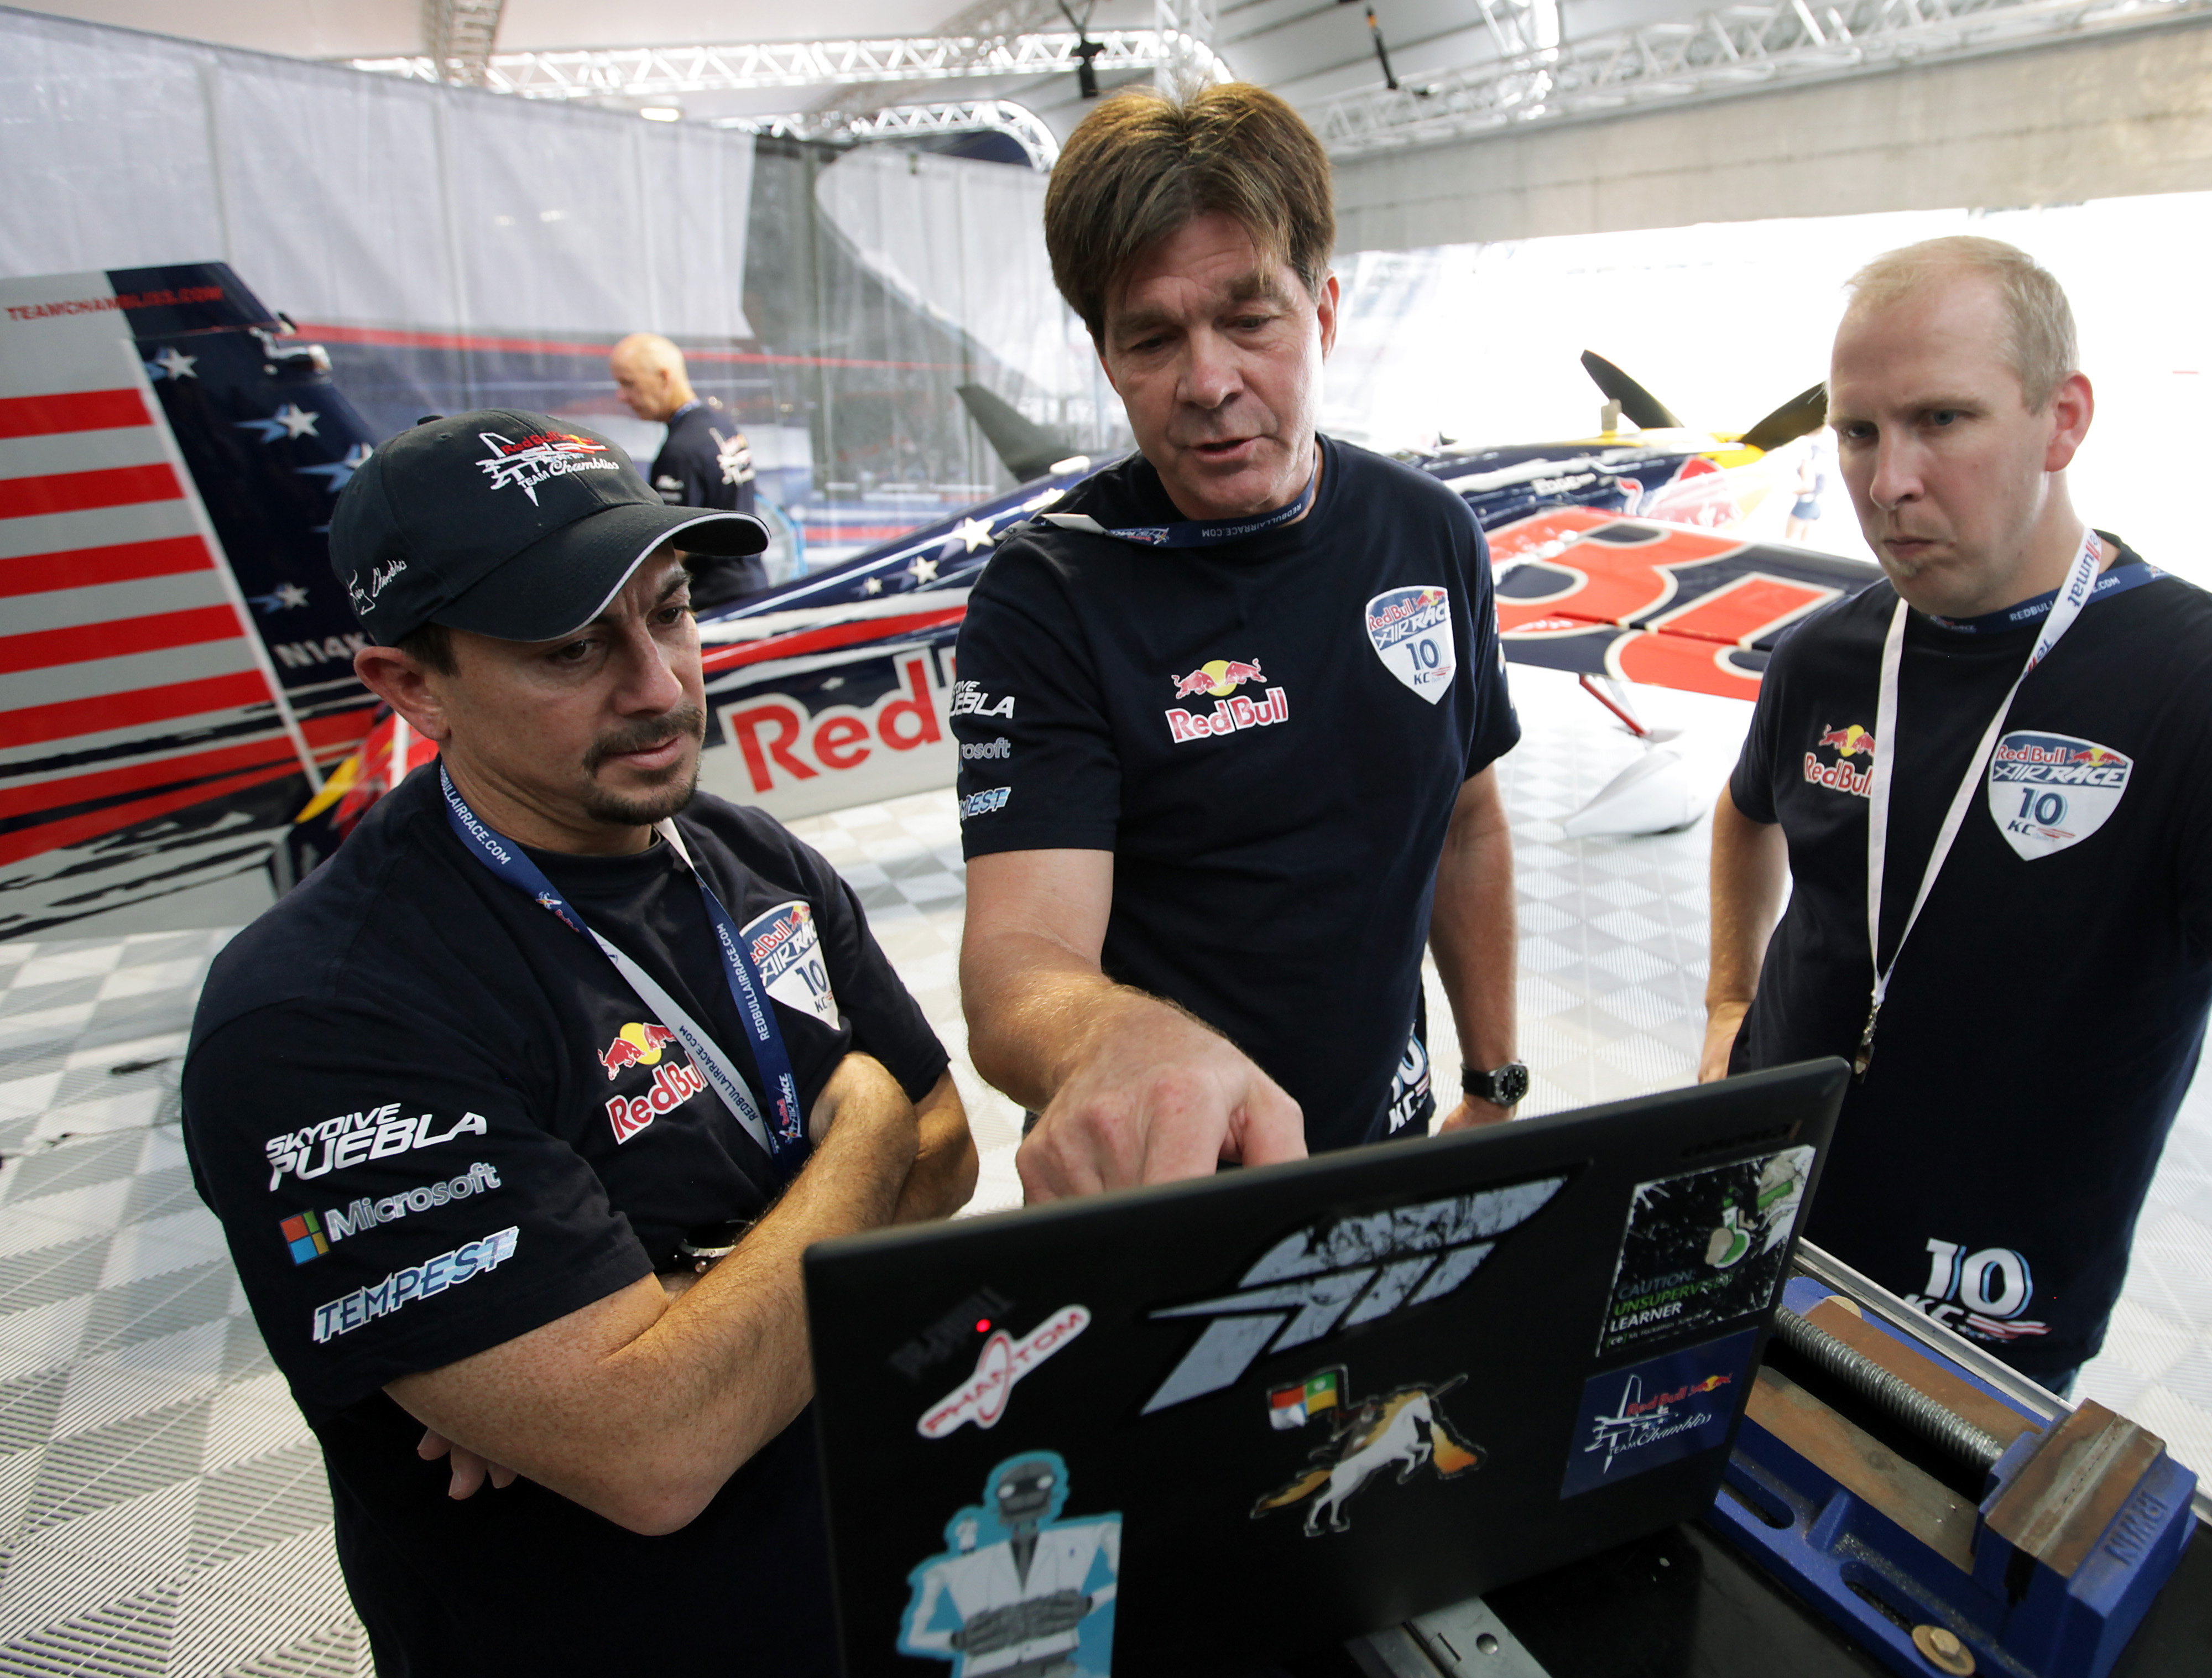 Gruñido difícil de complacer Gran Barrera de Coral Cómo un piloto de Red Bull Air Race busca resolver futuros retos con  navegación robótica - News Center Latinoamérica